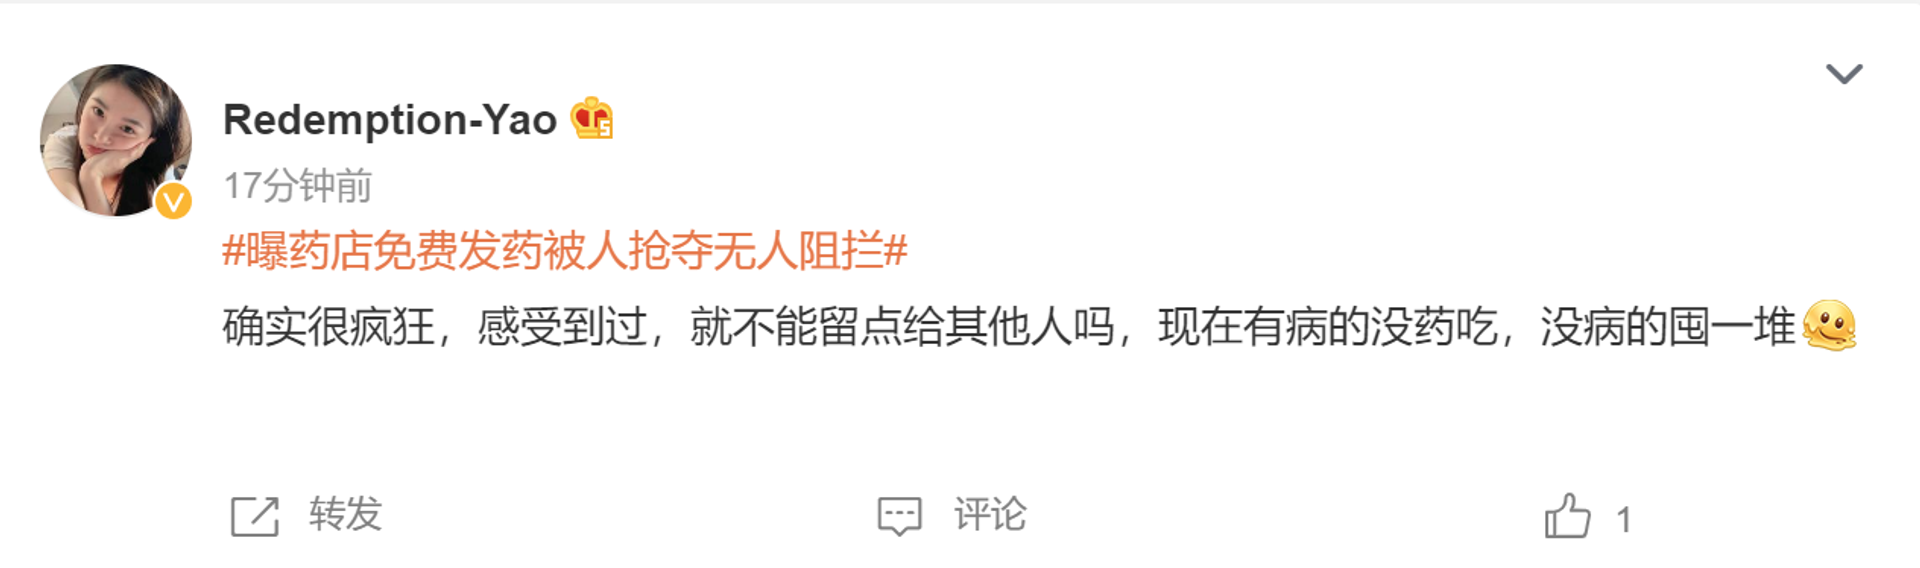 Weibo post on pharmacy